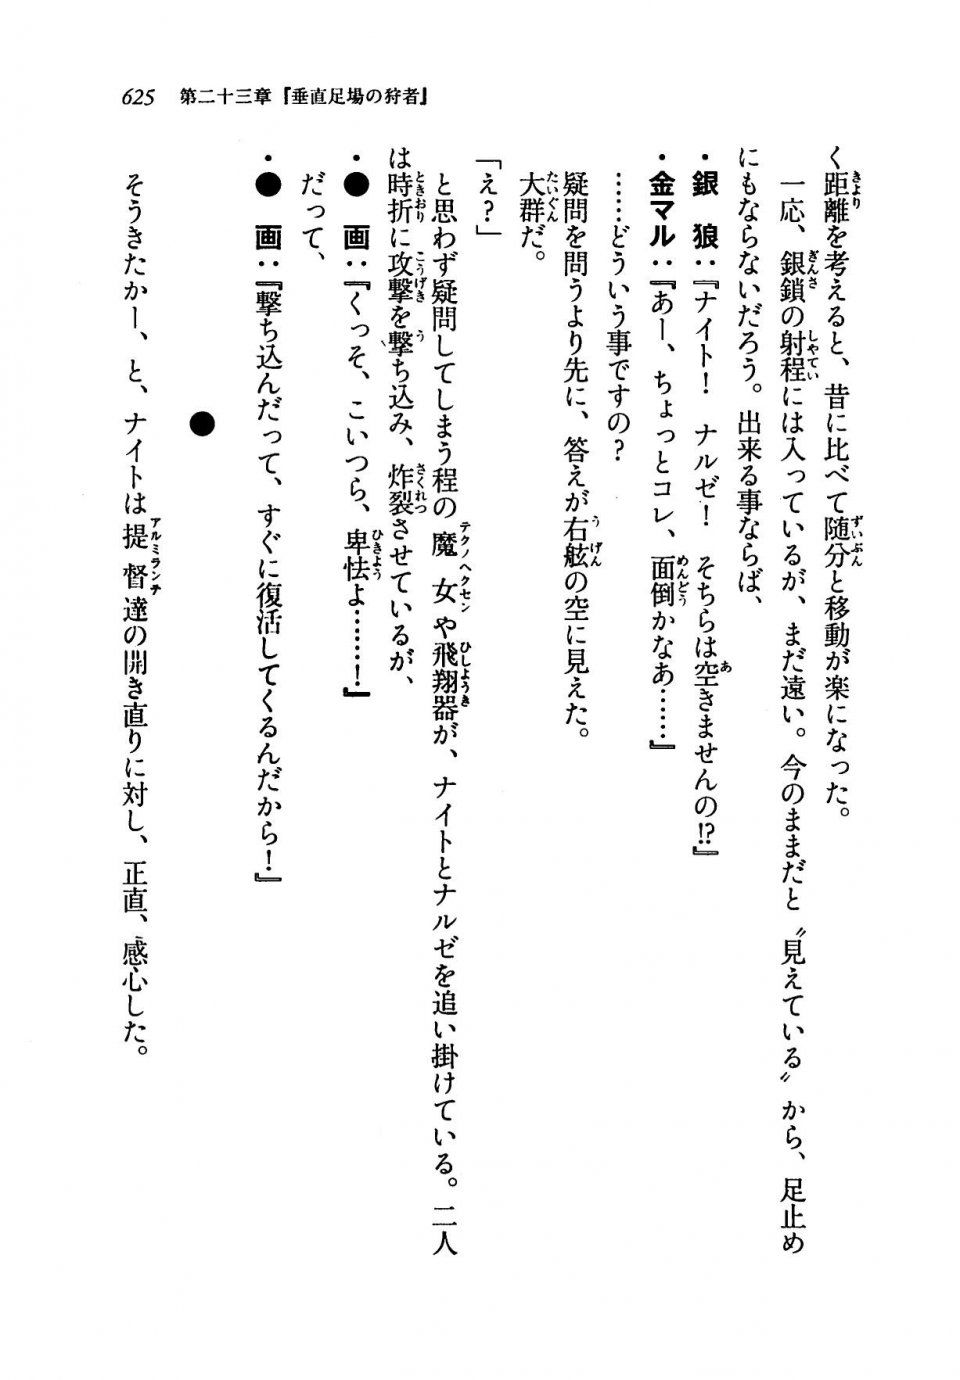 Kyoukai Senjou no Horizon LN Vol 19(8A) - Photo #625